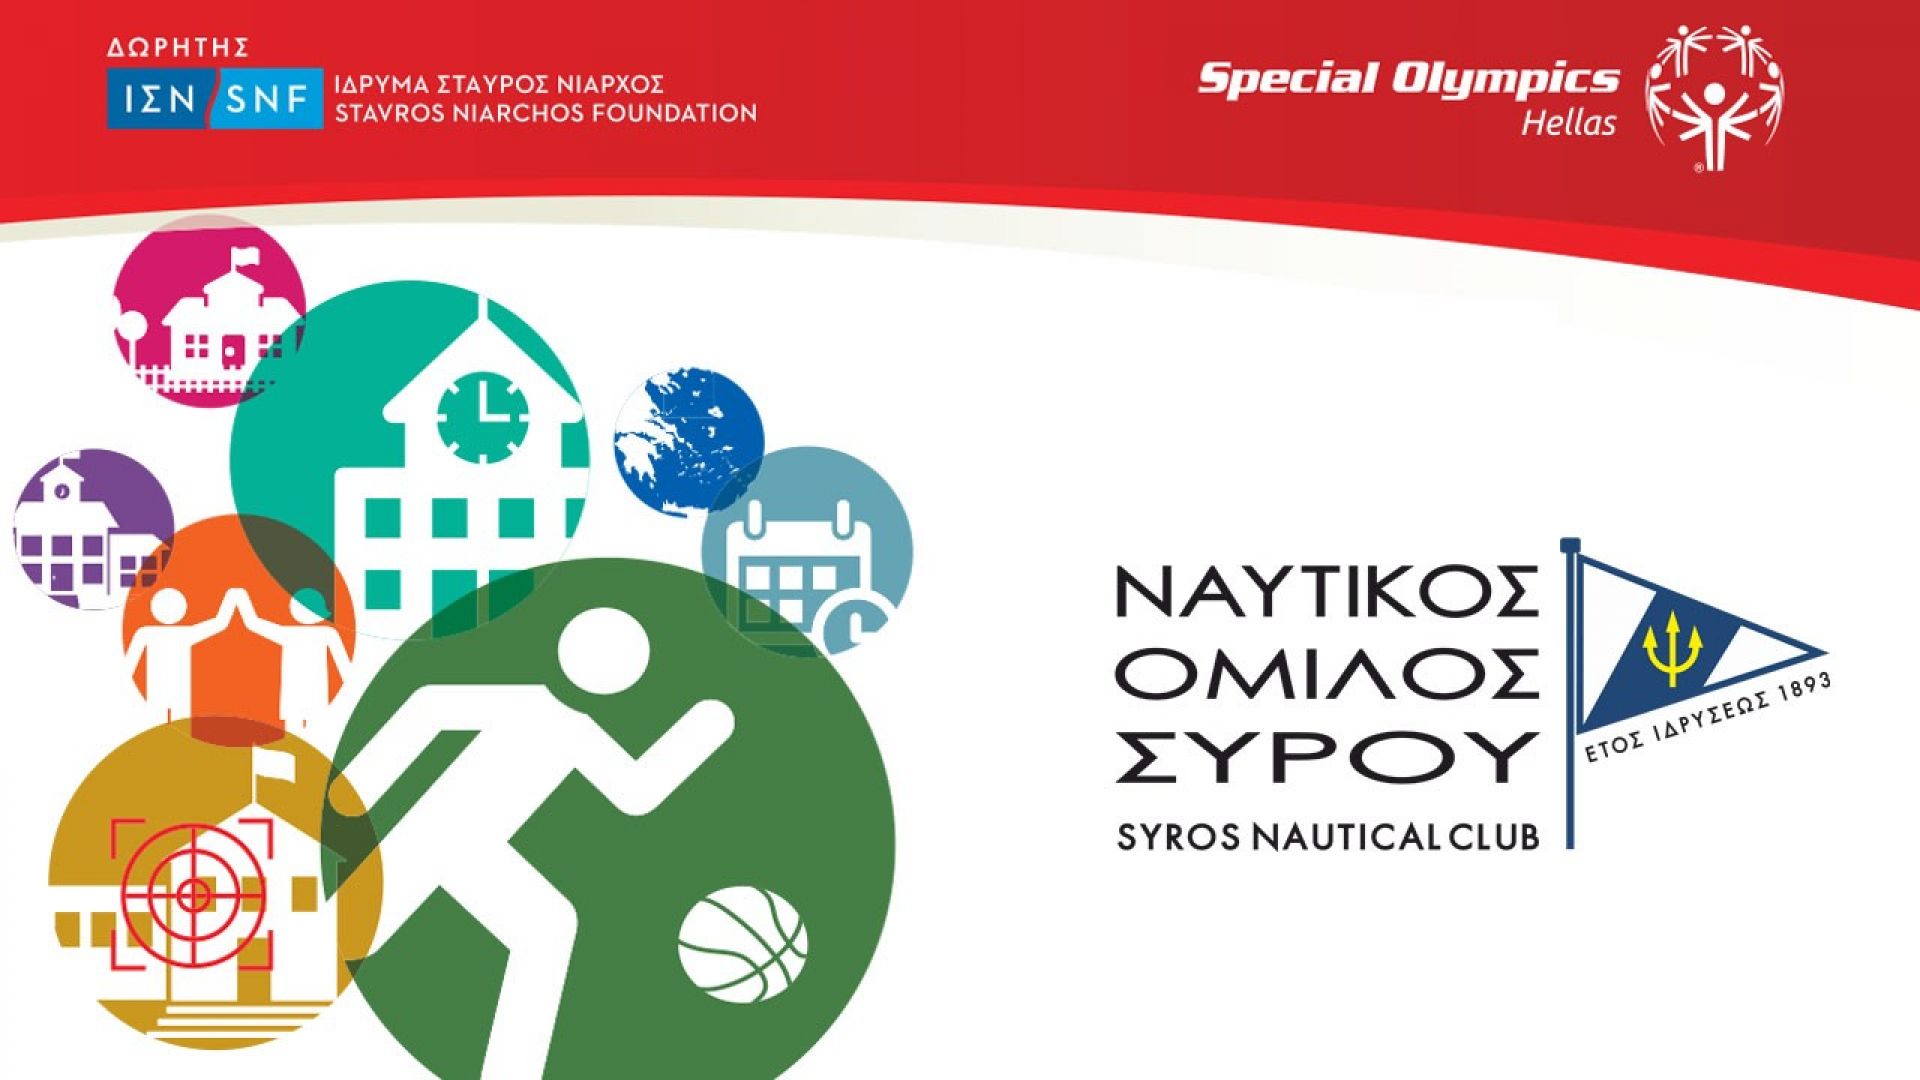 Ανοικτή εκδήλωση Special Olympics Hellas διοργανώνει ο ΝΟ ΣΥΡΟΥ